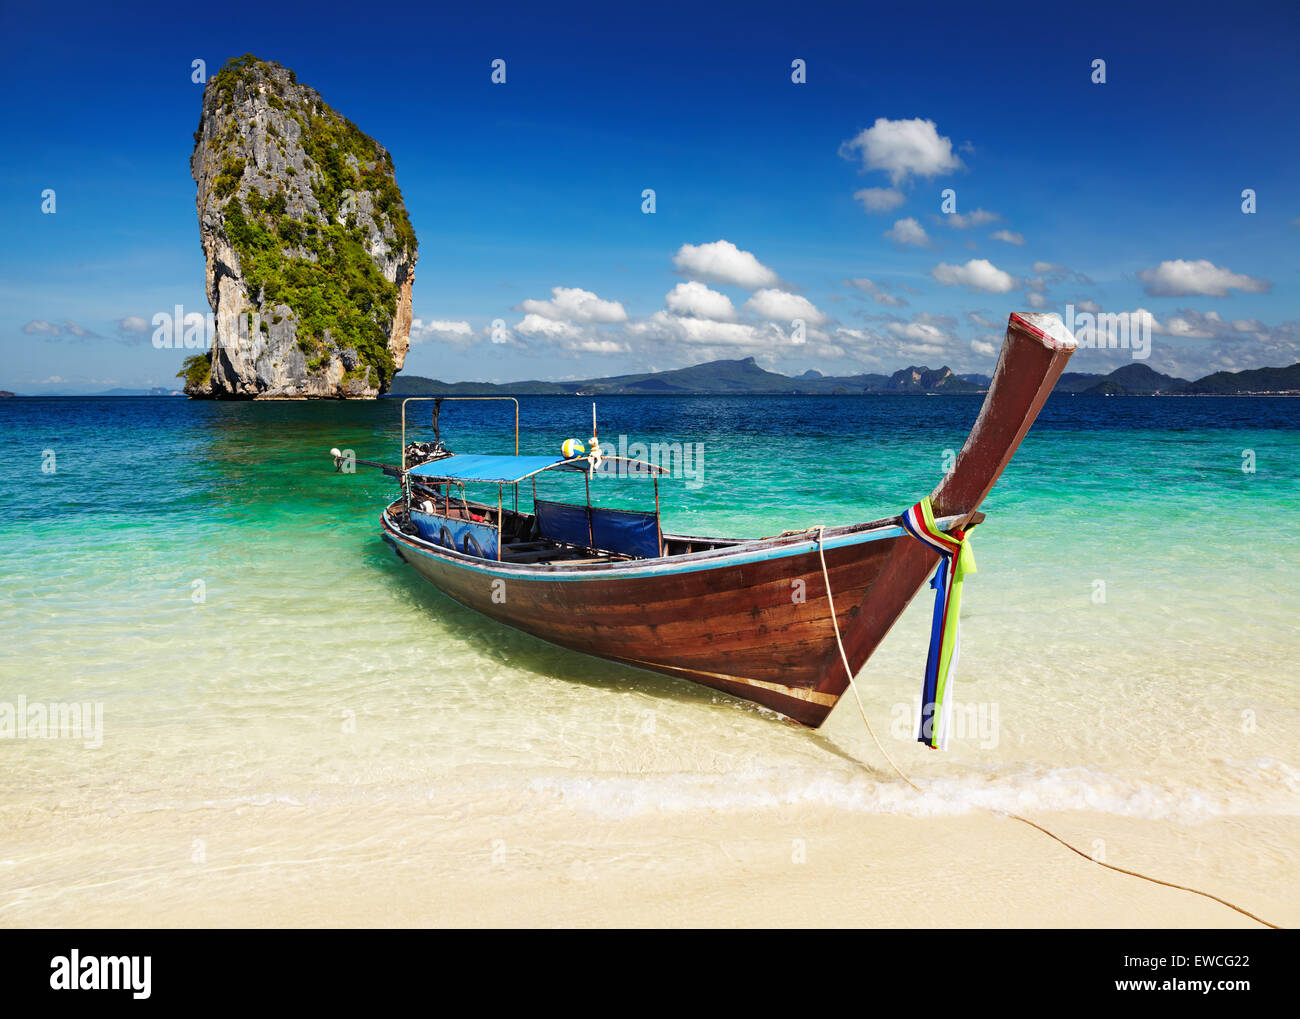 Bateau "long tail", la plage tropicale, la mer d'Andaman, Thaïlande Banque D'Images